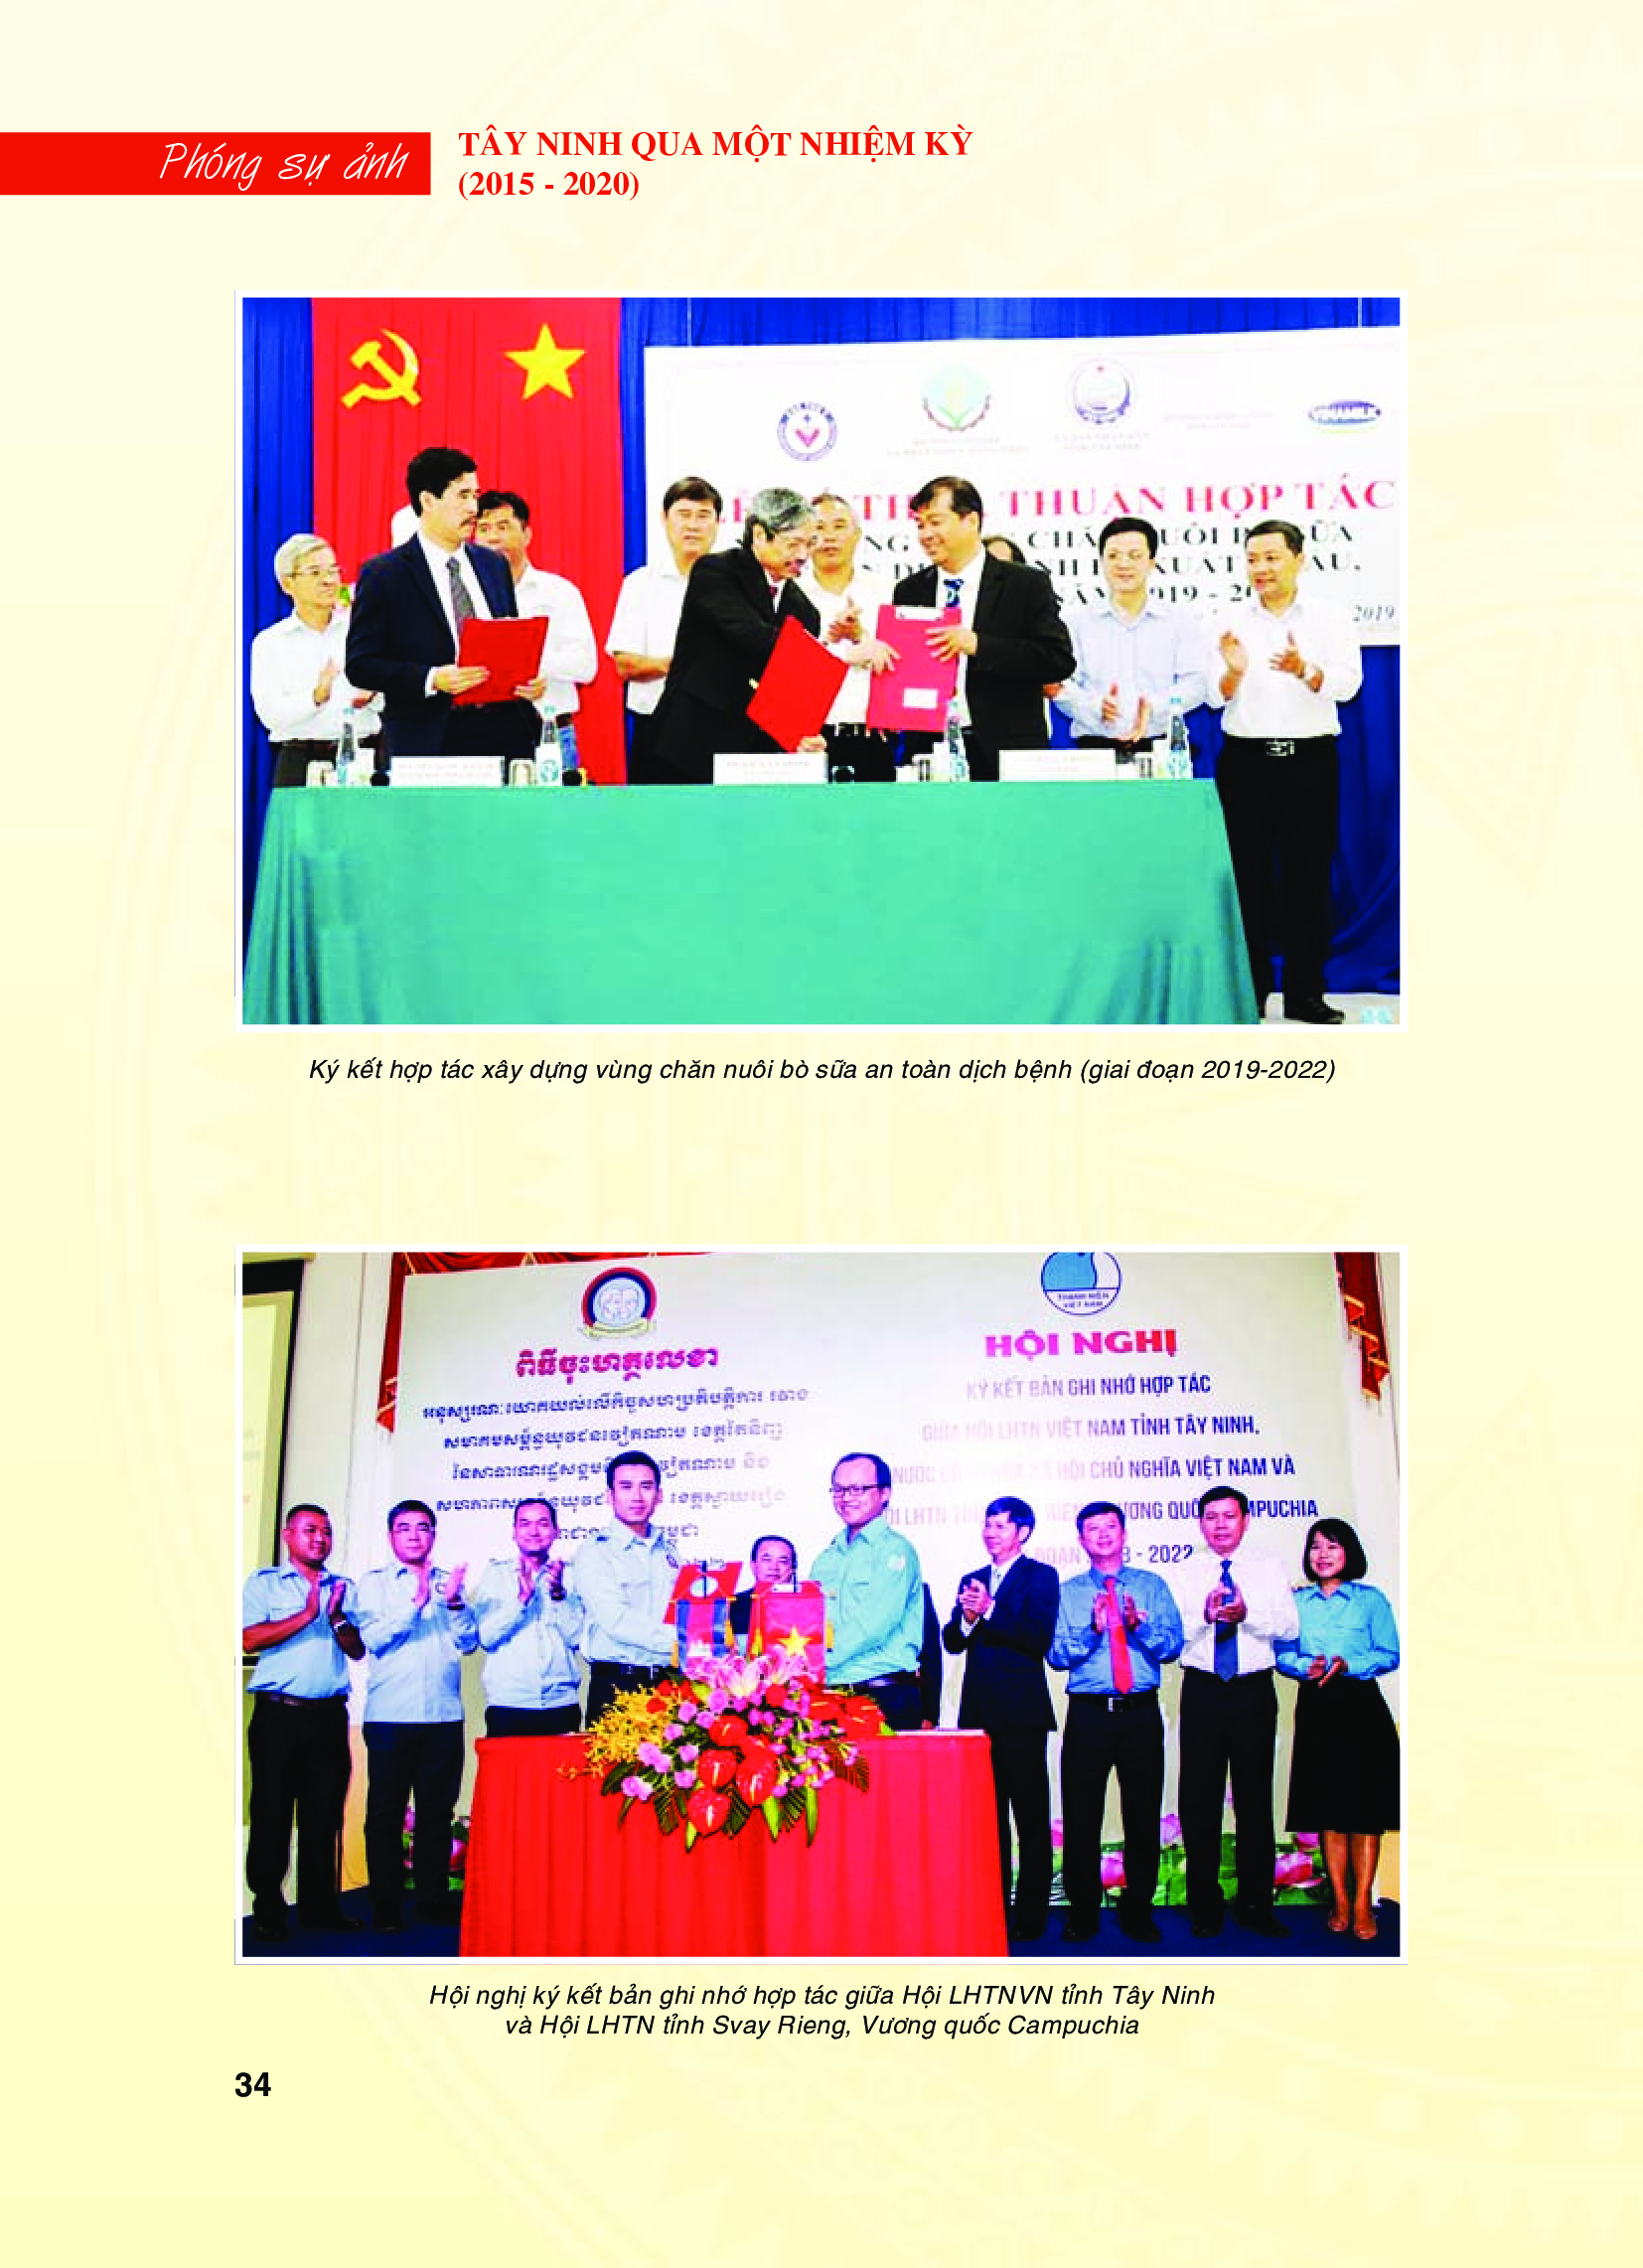 Tây Ninh qua một nhiệm kỳ (2015 - 2020) - Hoạt động đối ngoại và ký kết hợp tác quốc tế